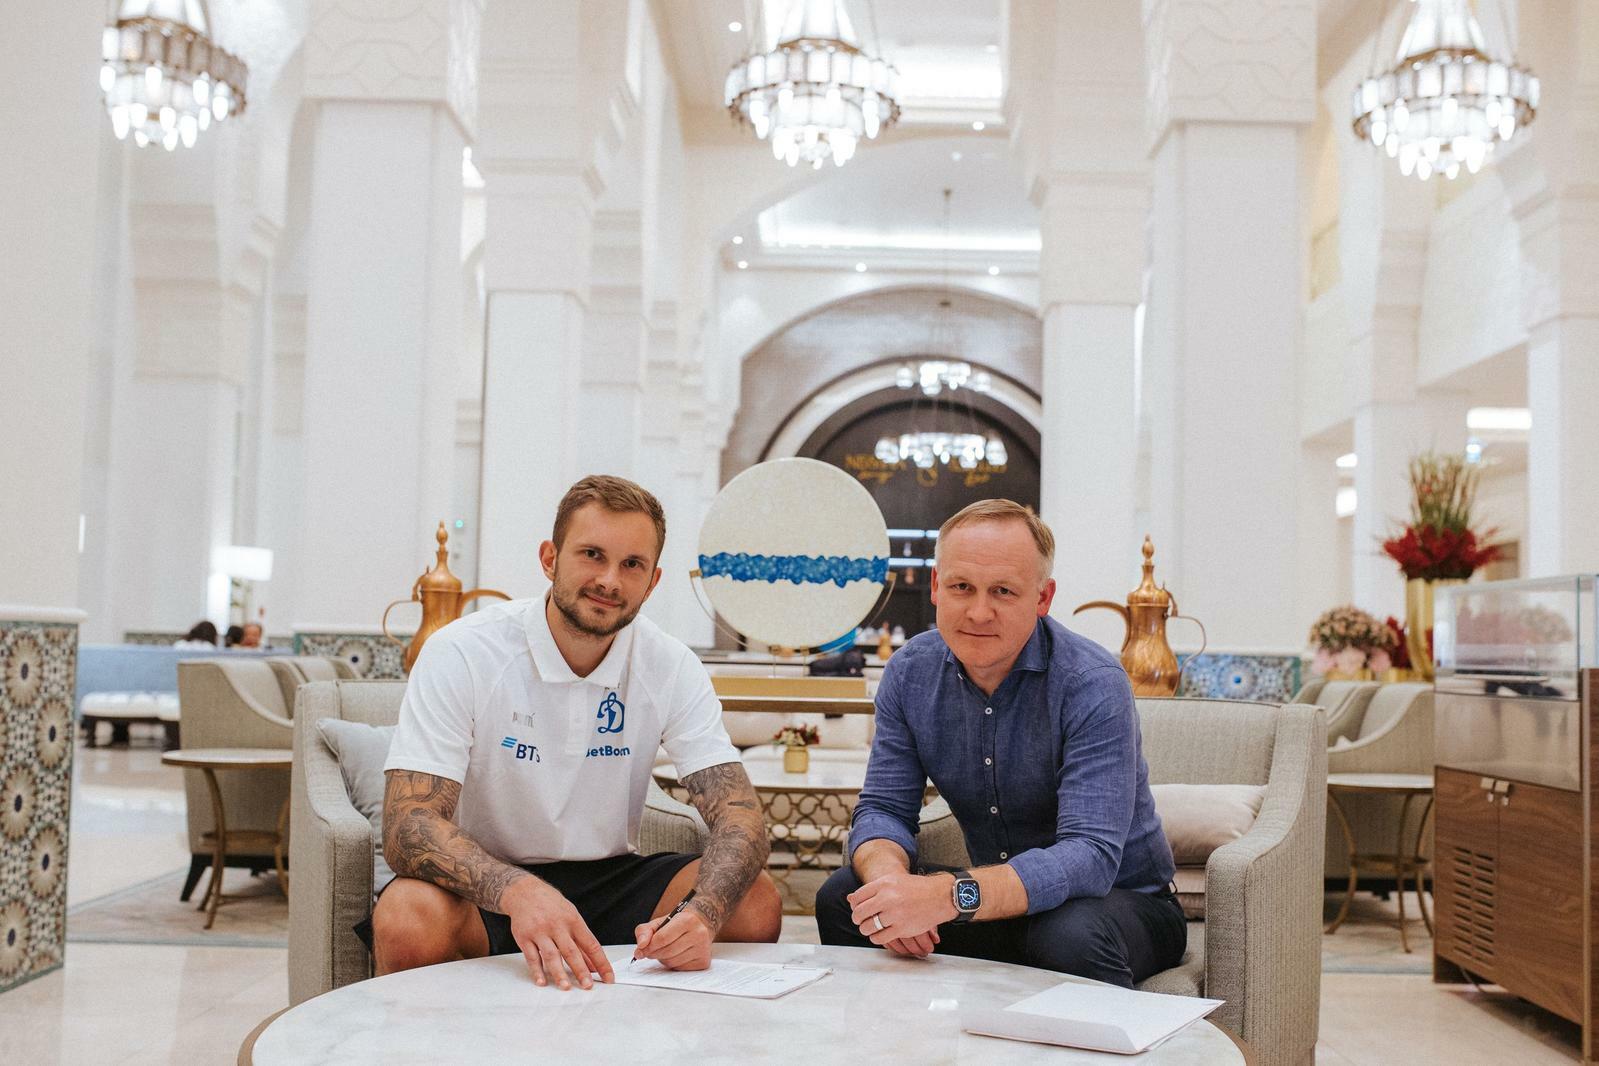 Noticias del FC "Dynamo" Moscú | Igor Leshchuk: "El Dynamo para mí es como un segundo hogar, del cual no quiero irme". Sitio oficial del club Dynamo.